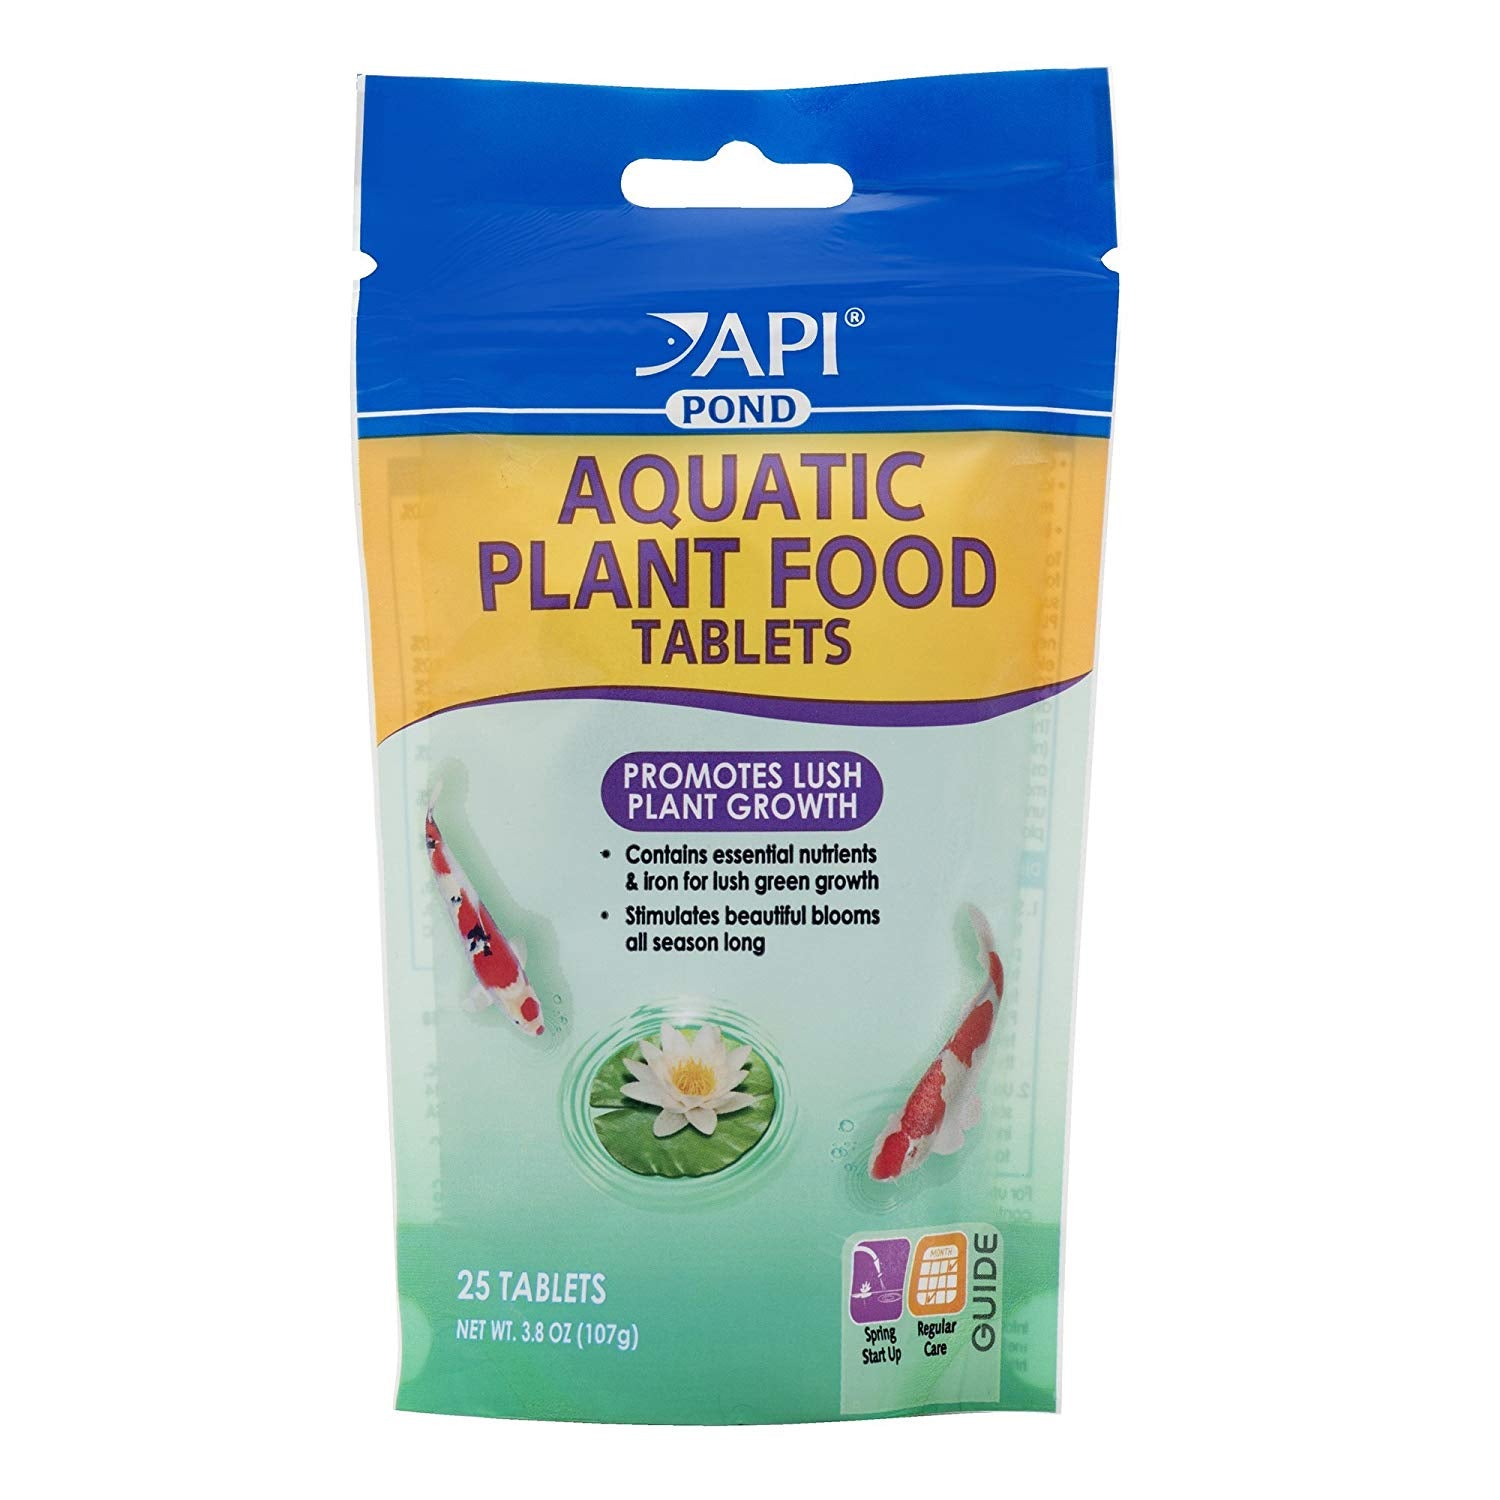 API Pond Aquatic Plant Food Tablets